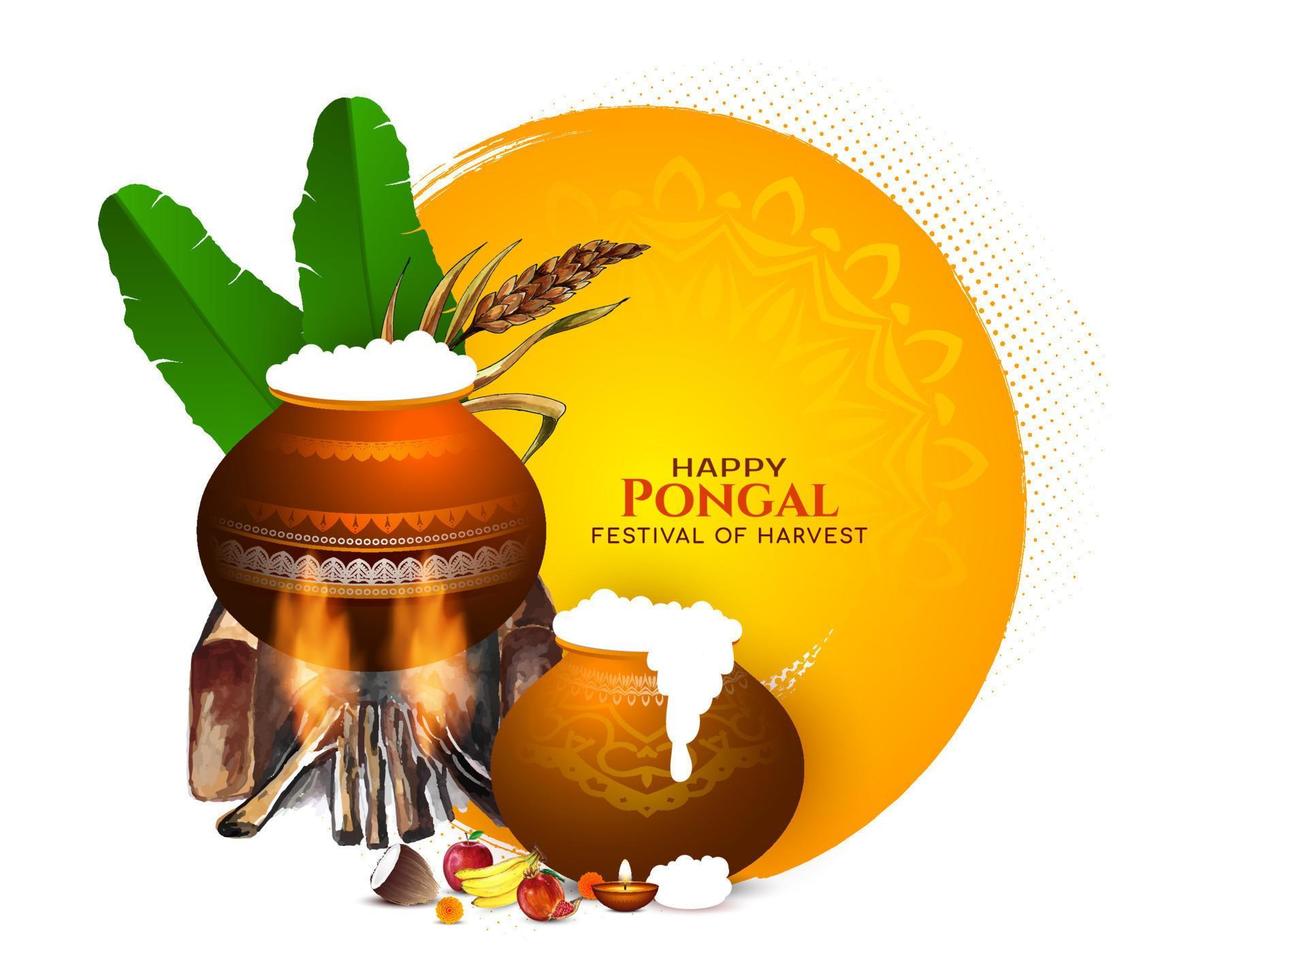 happy pongal südindischer kulturfestival hintergrund vektor